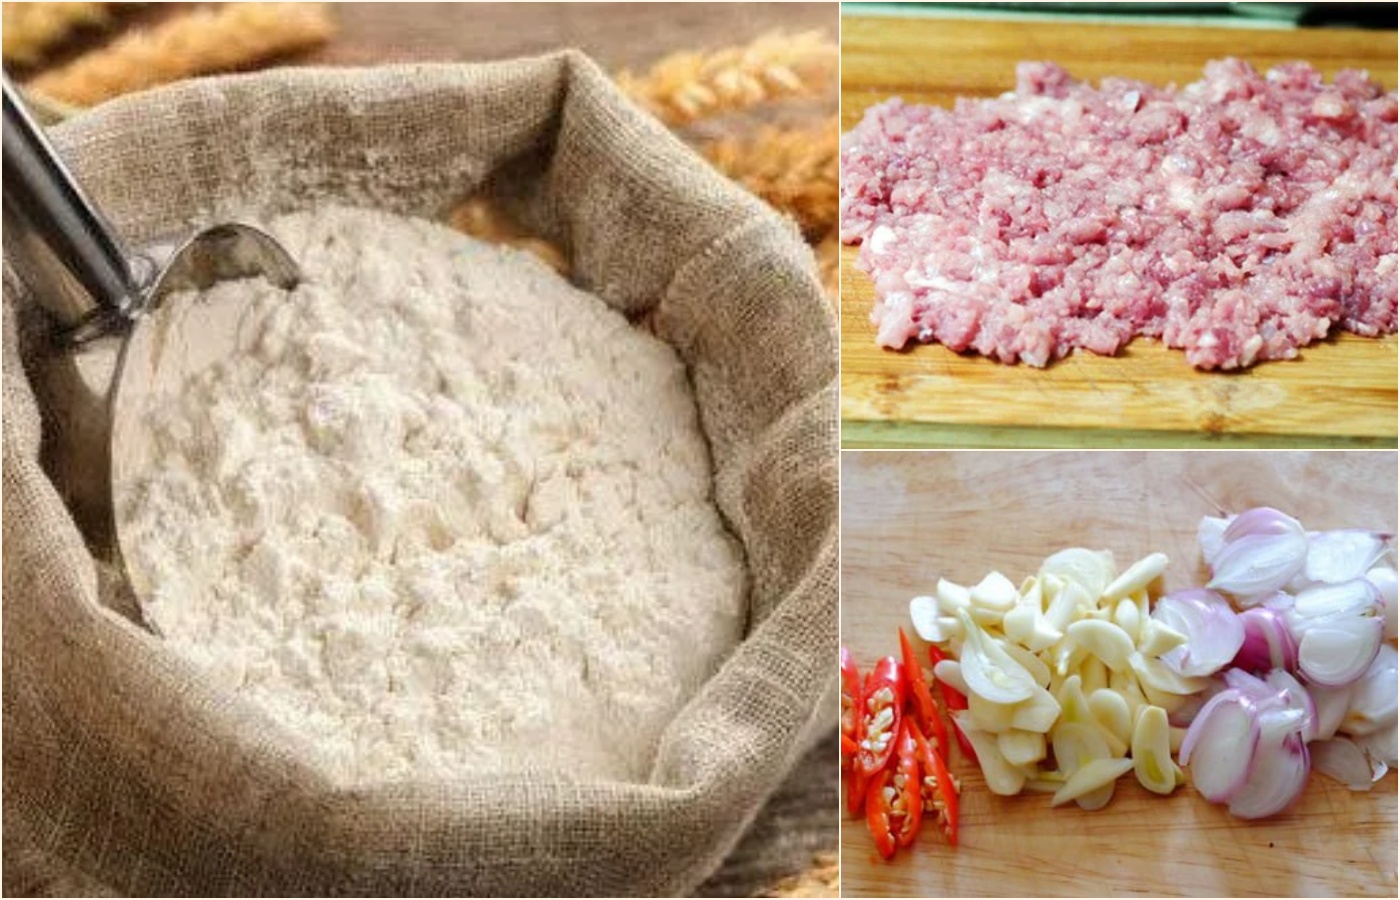 5 cách làm bánh cuốn bằng bột gạo, bột mì, bánh tráng đơn giản - 9